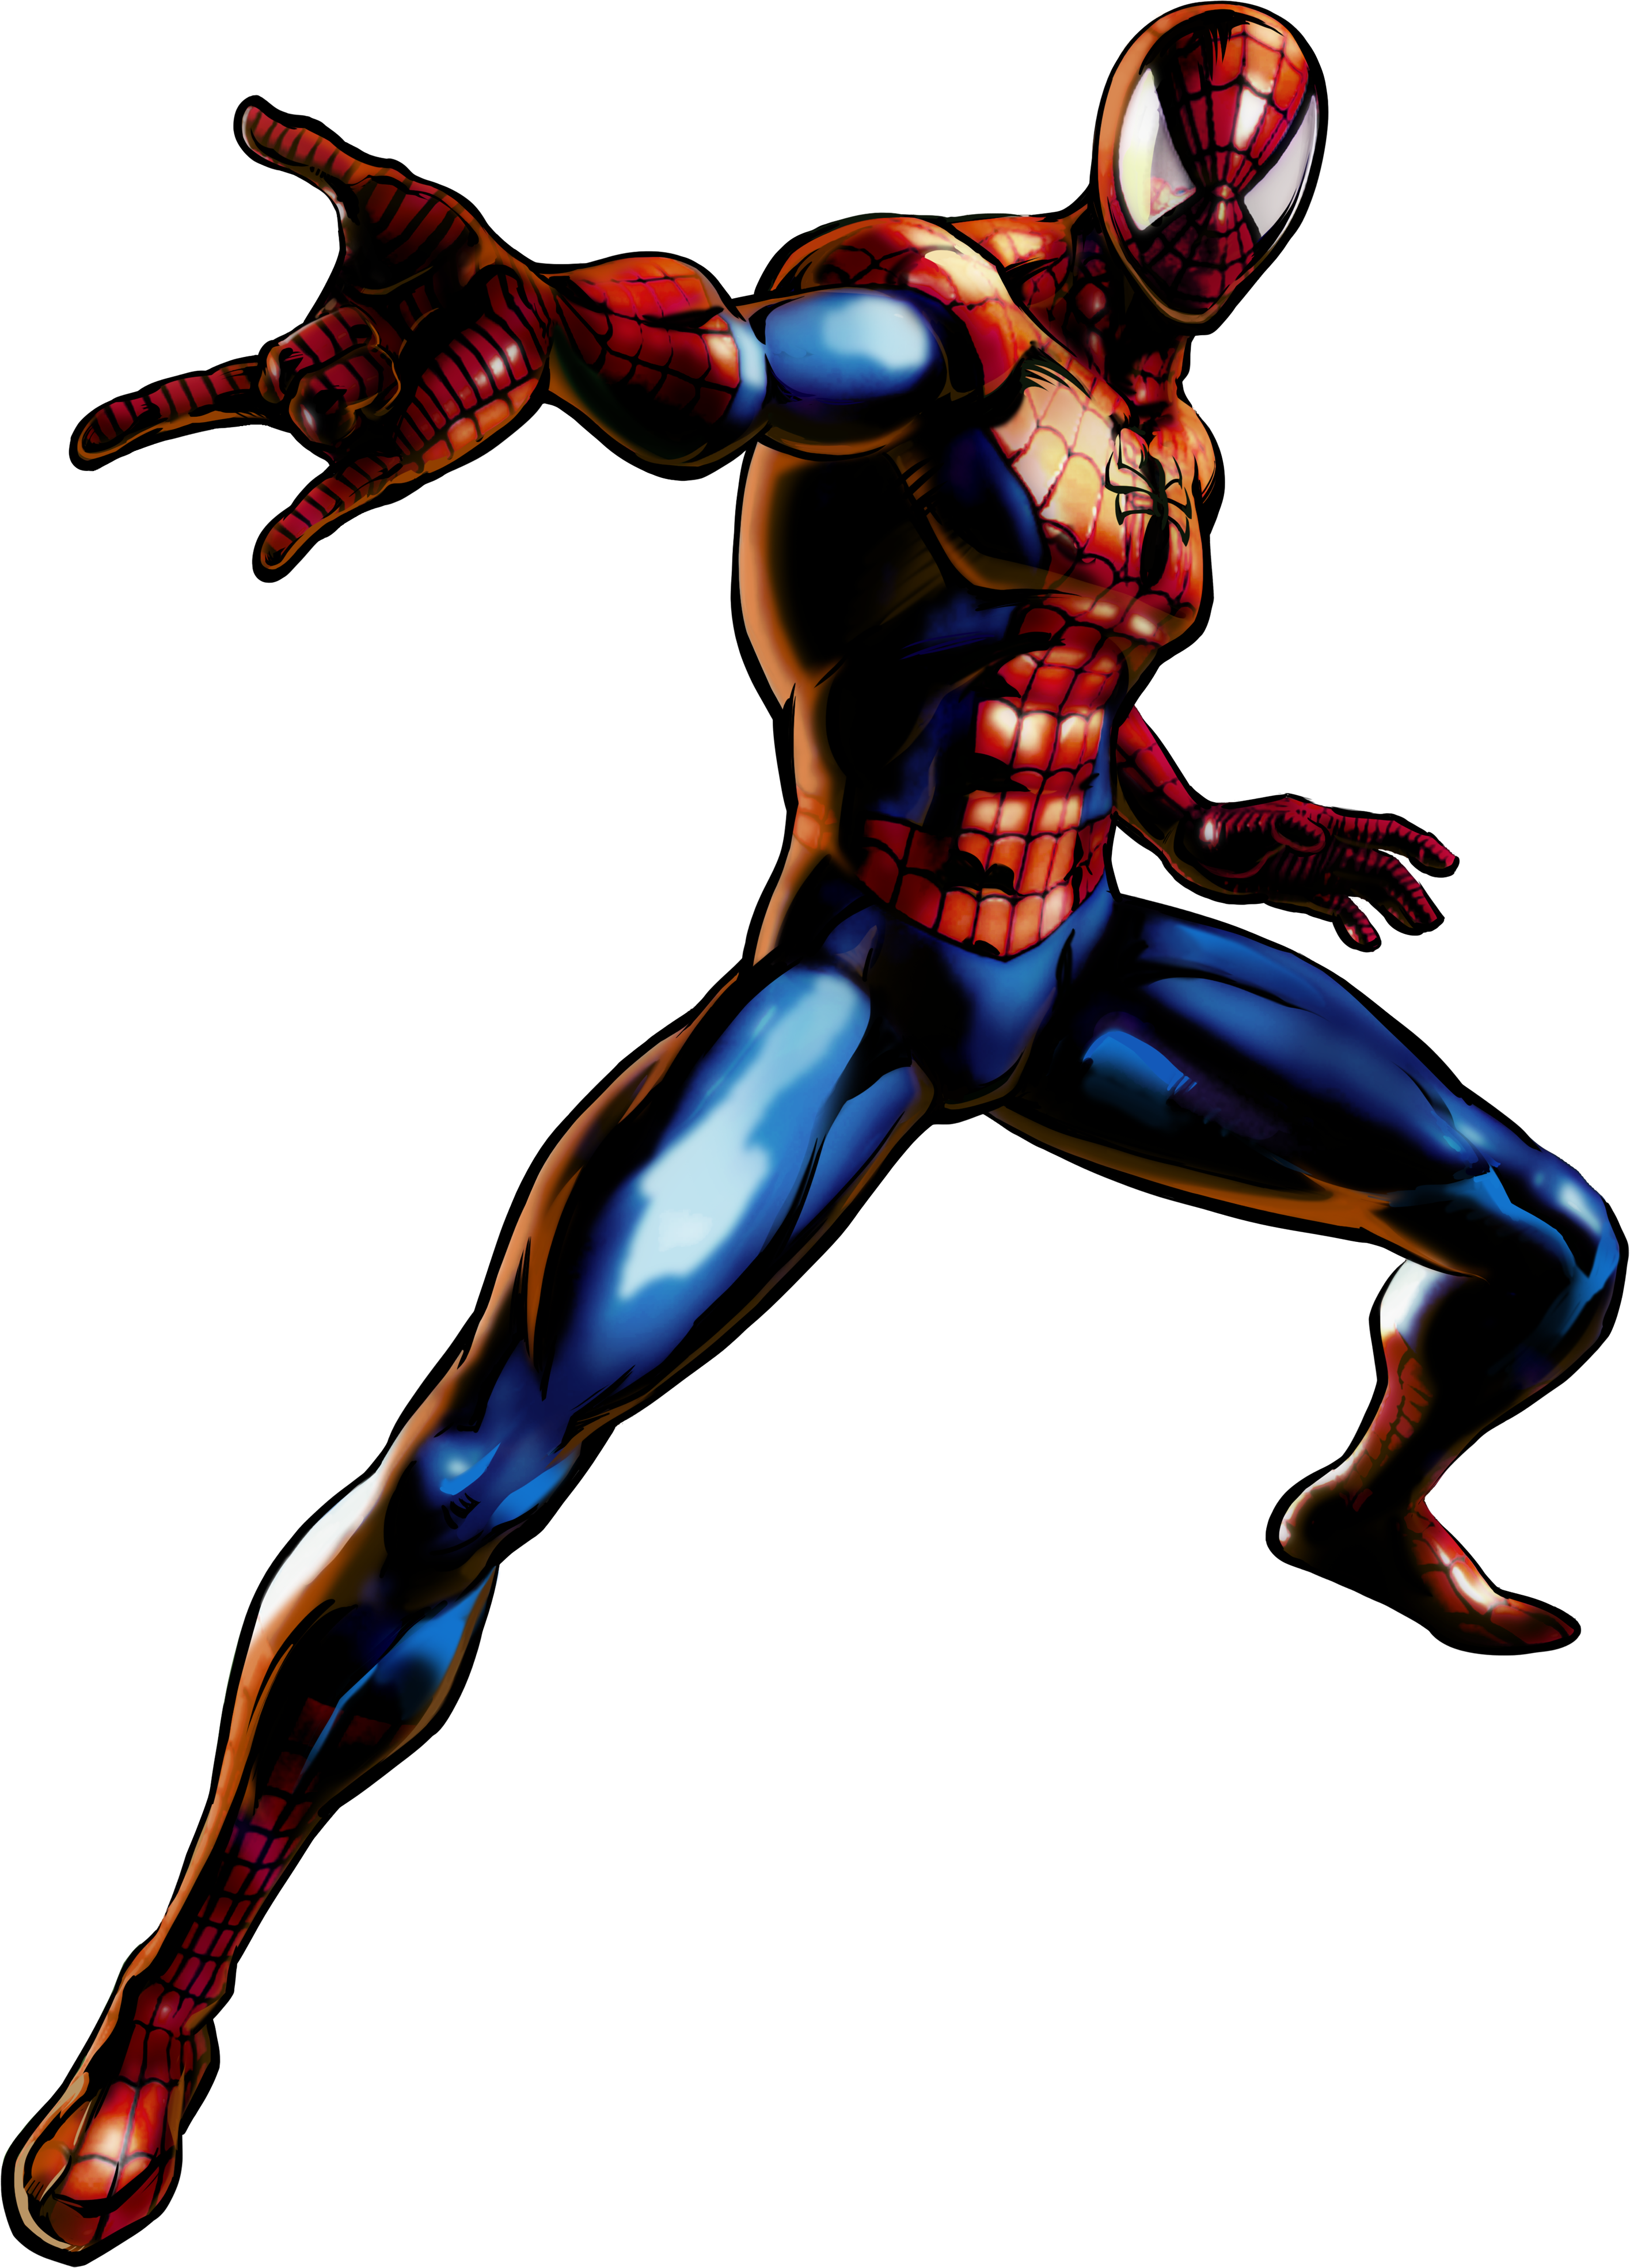 marvel vs capcom 3 spiderman